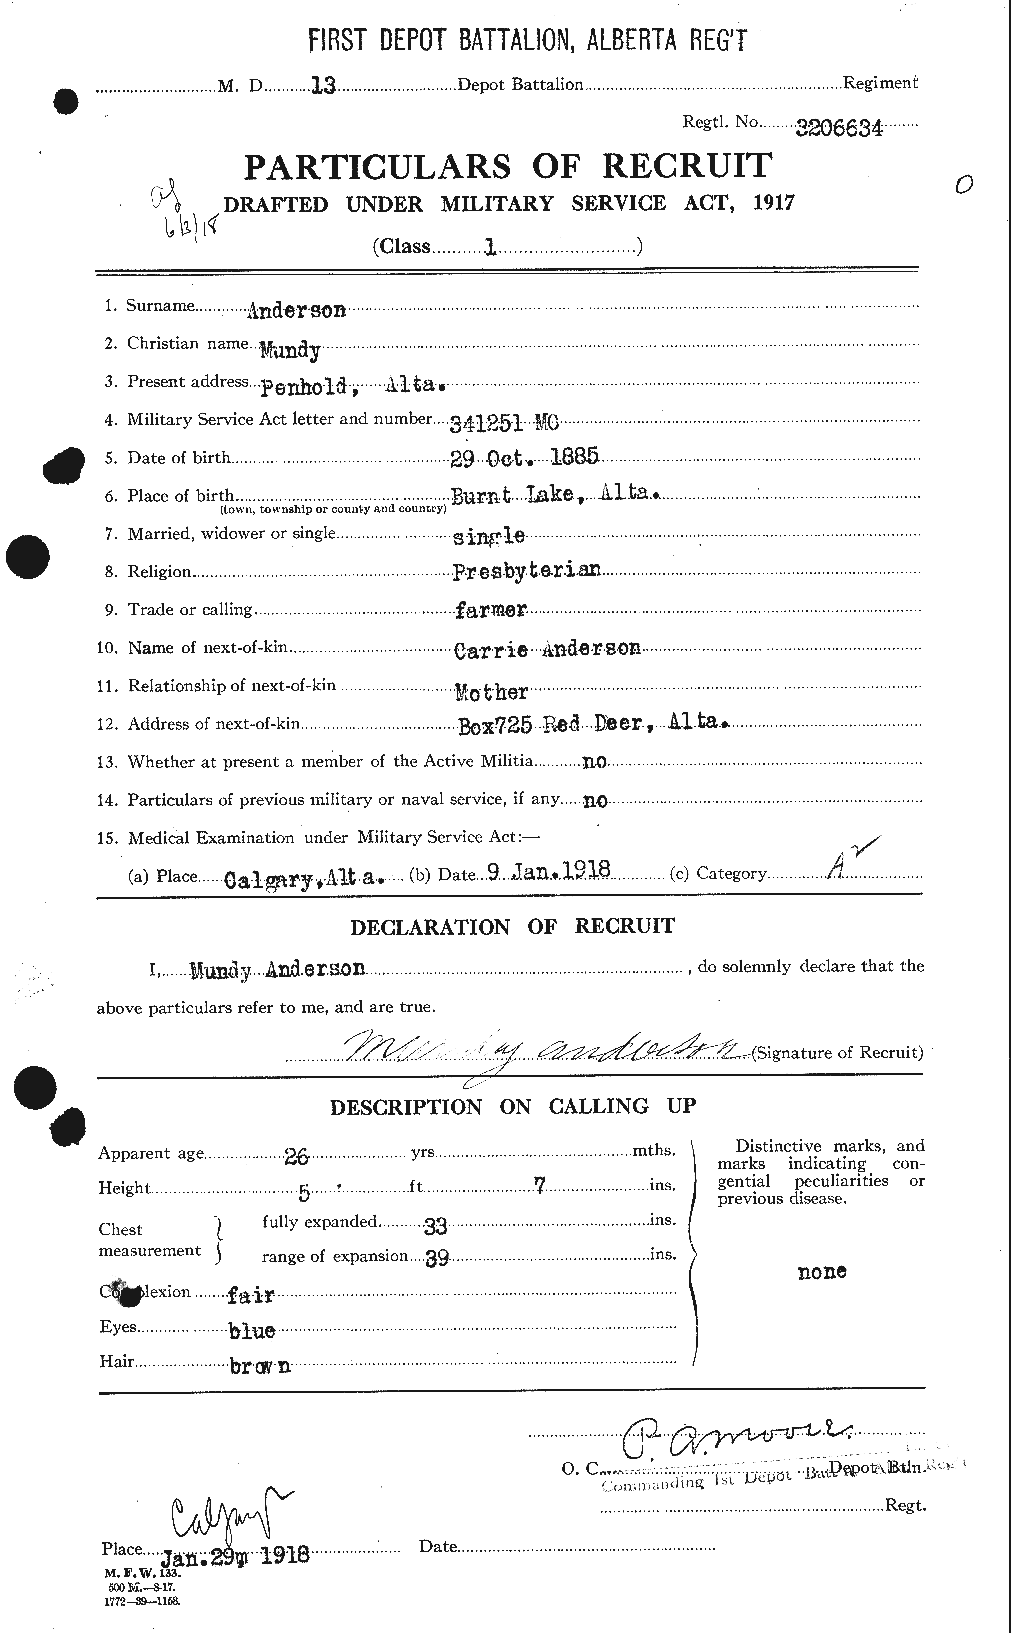 Dossiers du Personnel de la Première Guerre mondiale - CEC 207443a